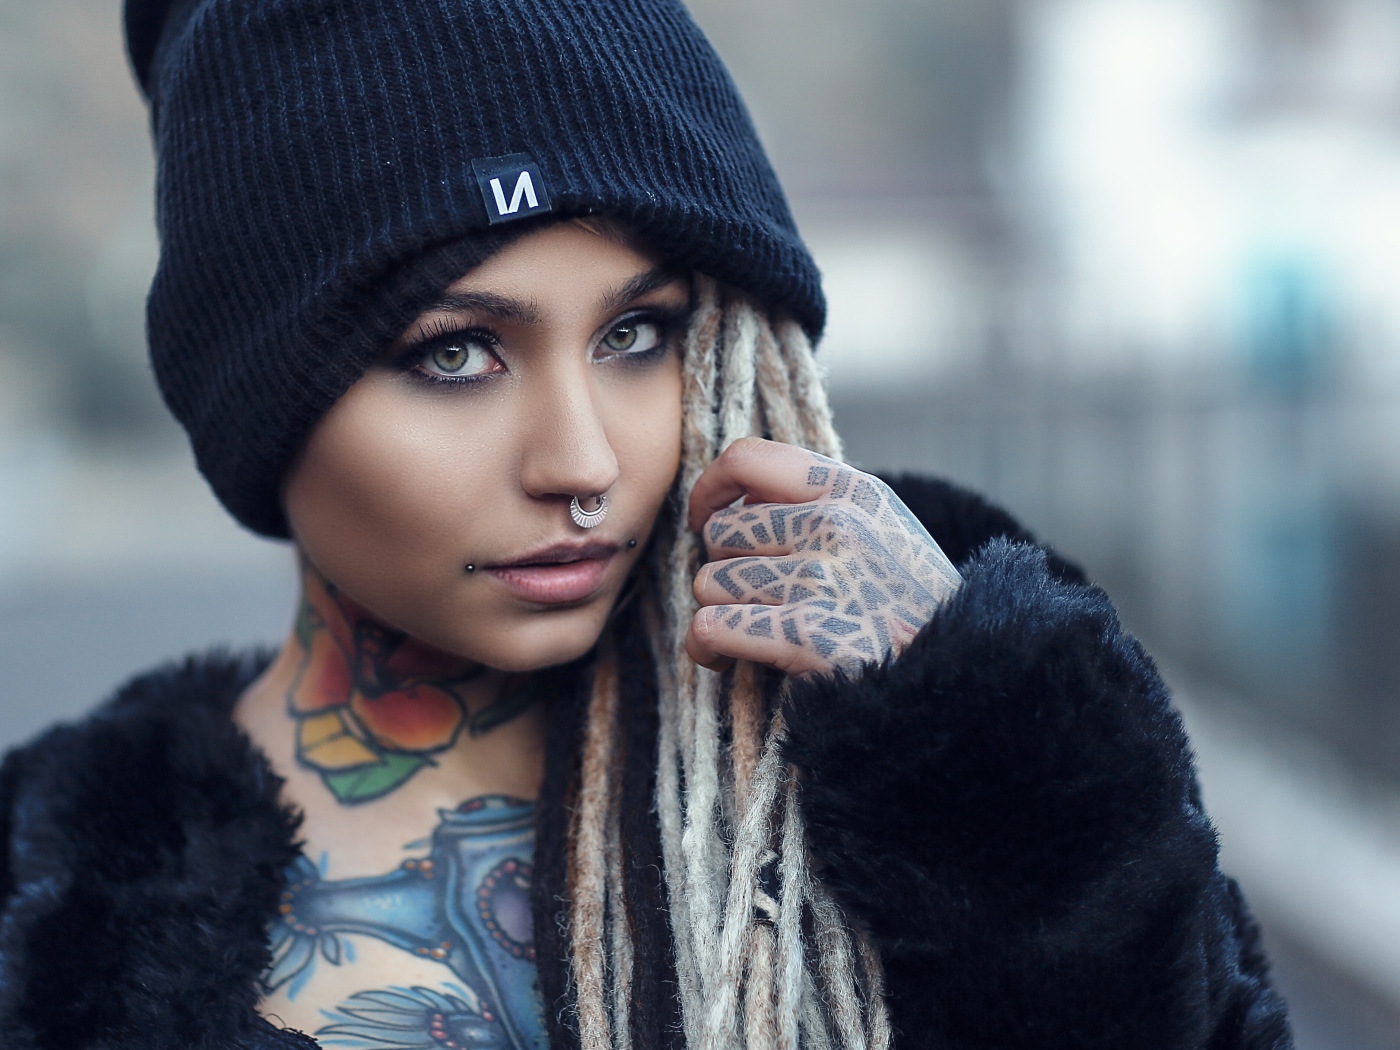 Красивая девушка в черной шапке с татуировками на теле 